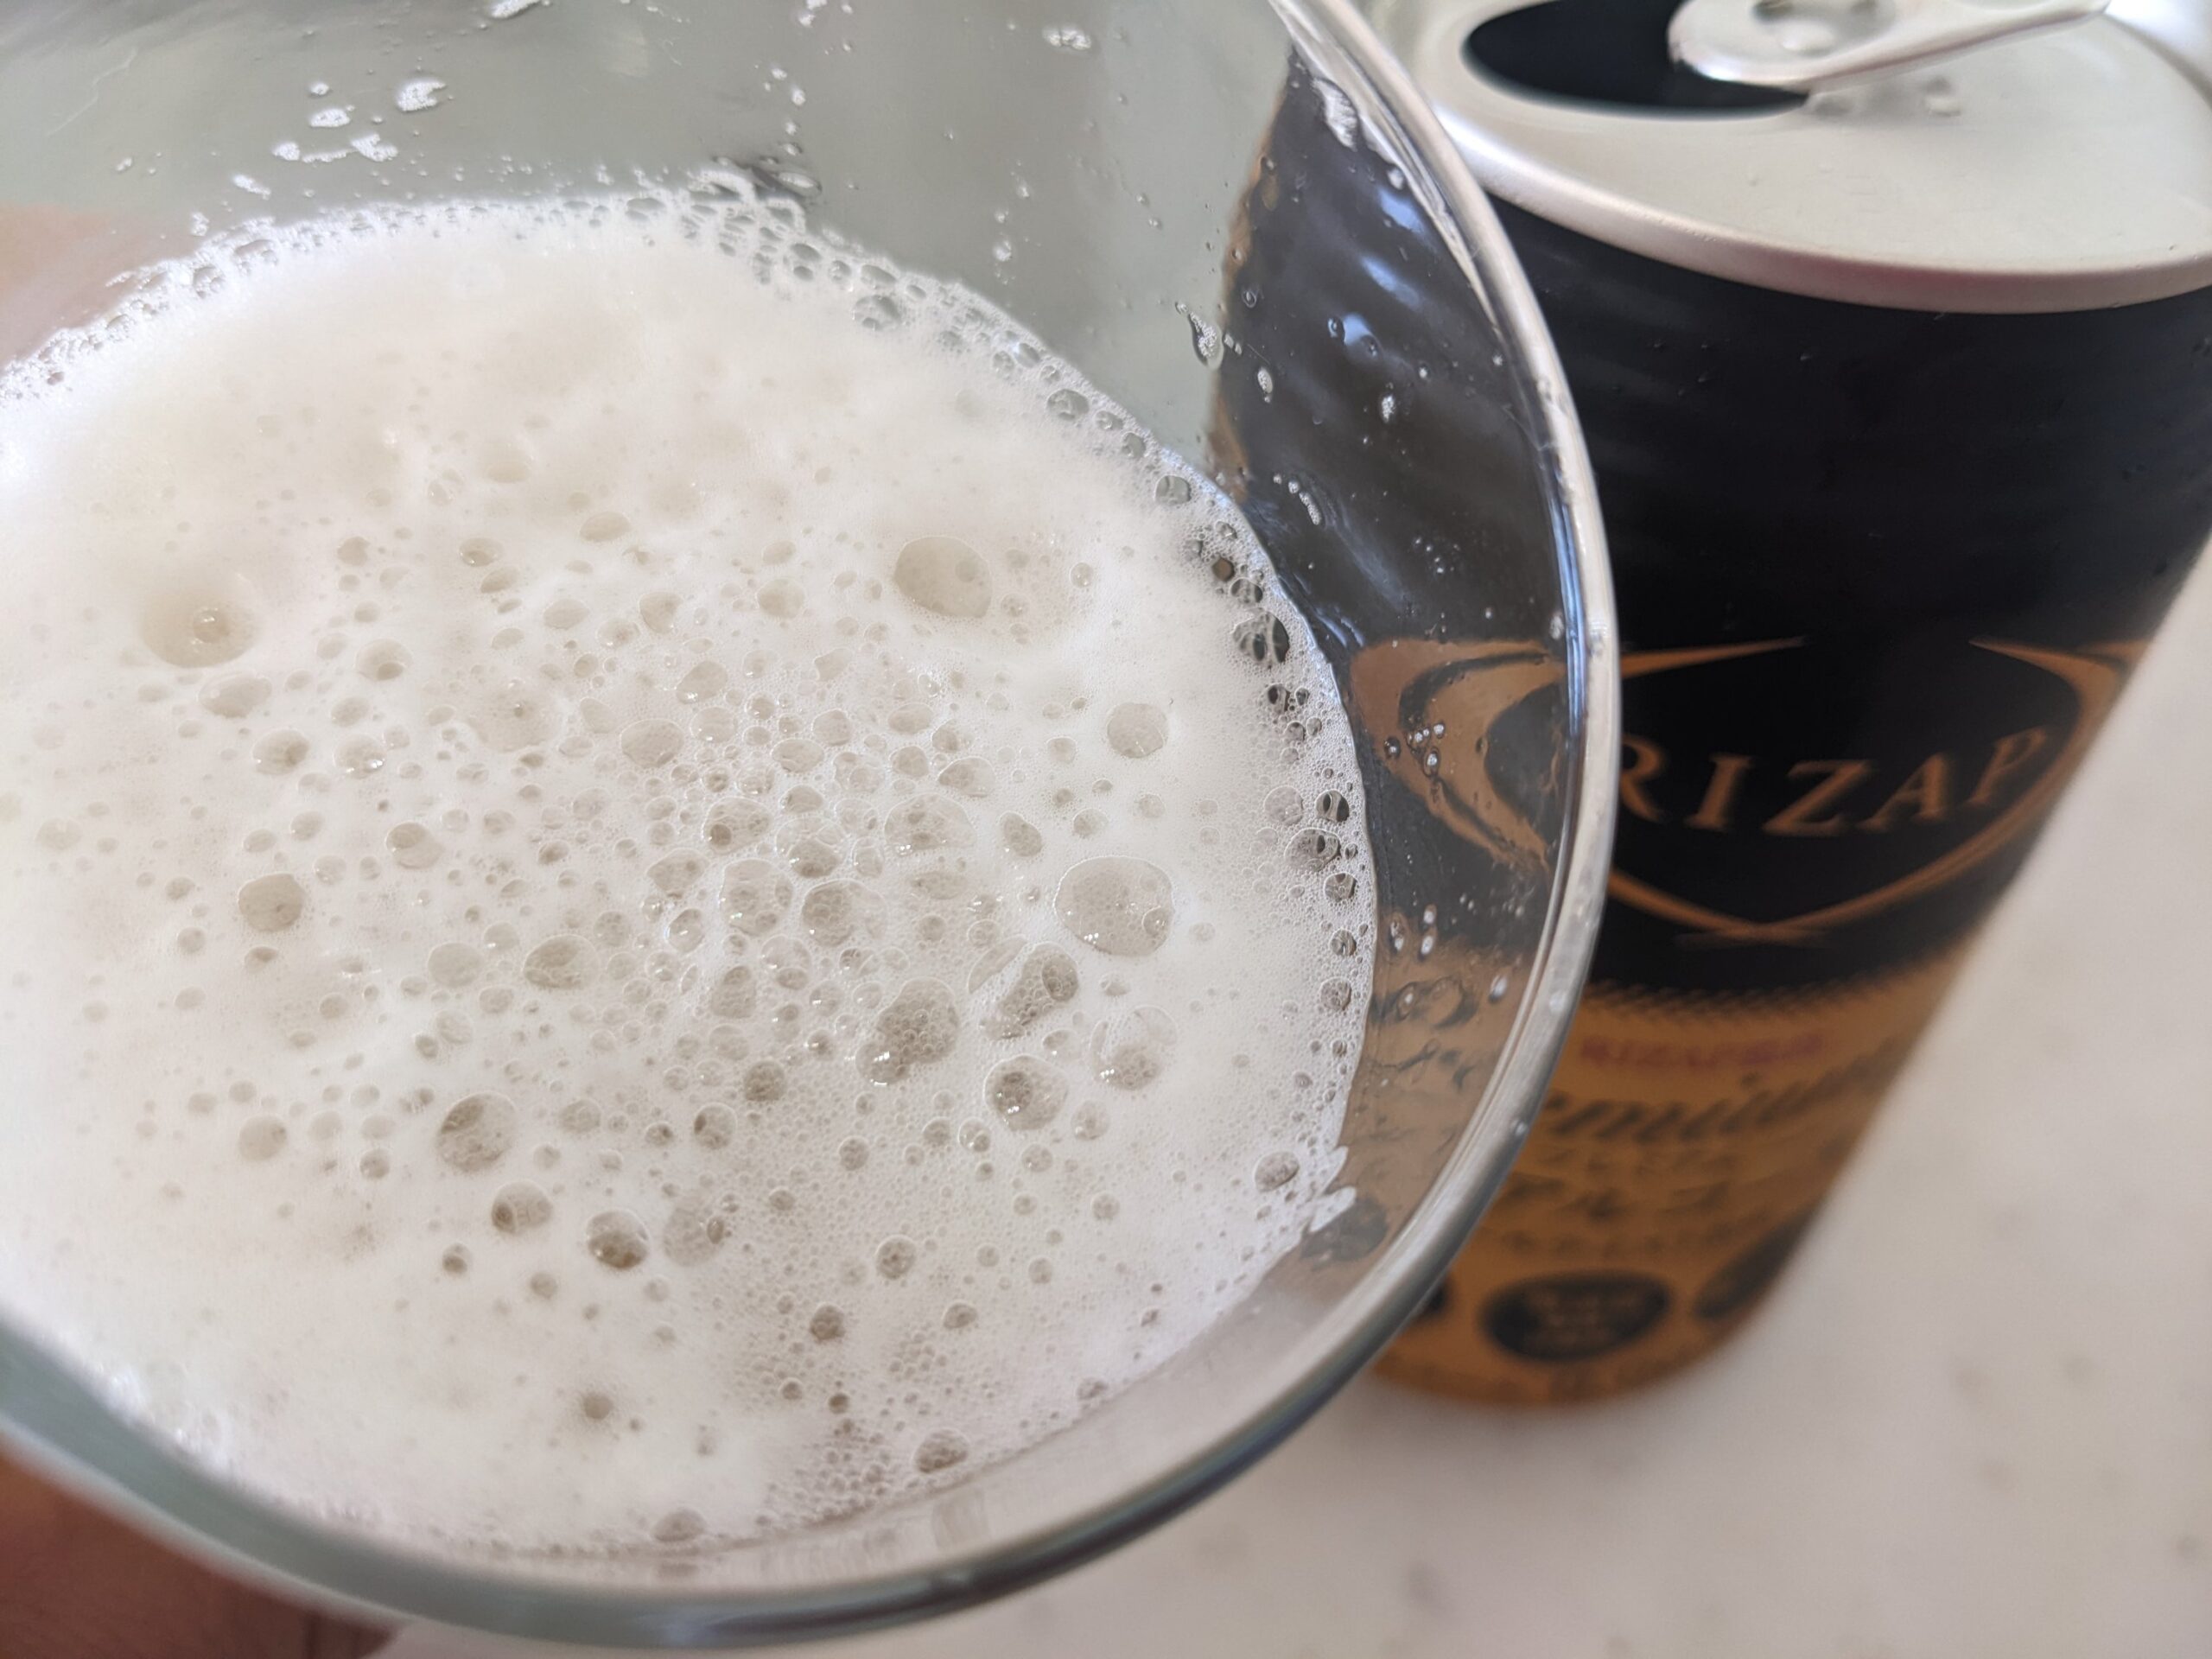 「RIZAP（ライザップ）プレミアムノンアルコールビールテイスト飲料」を一口飲んだところ